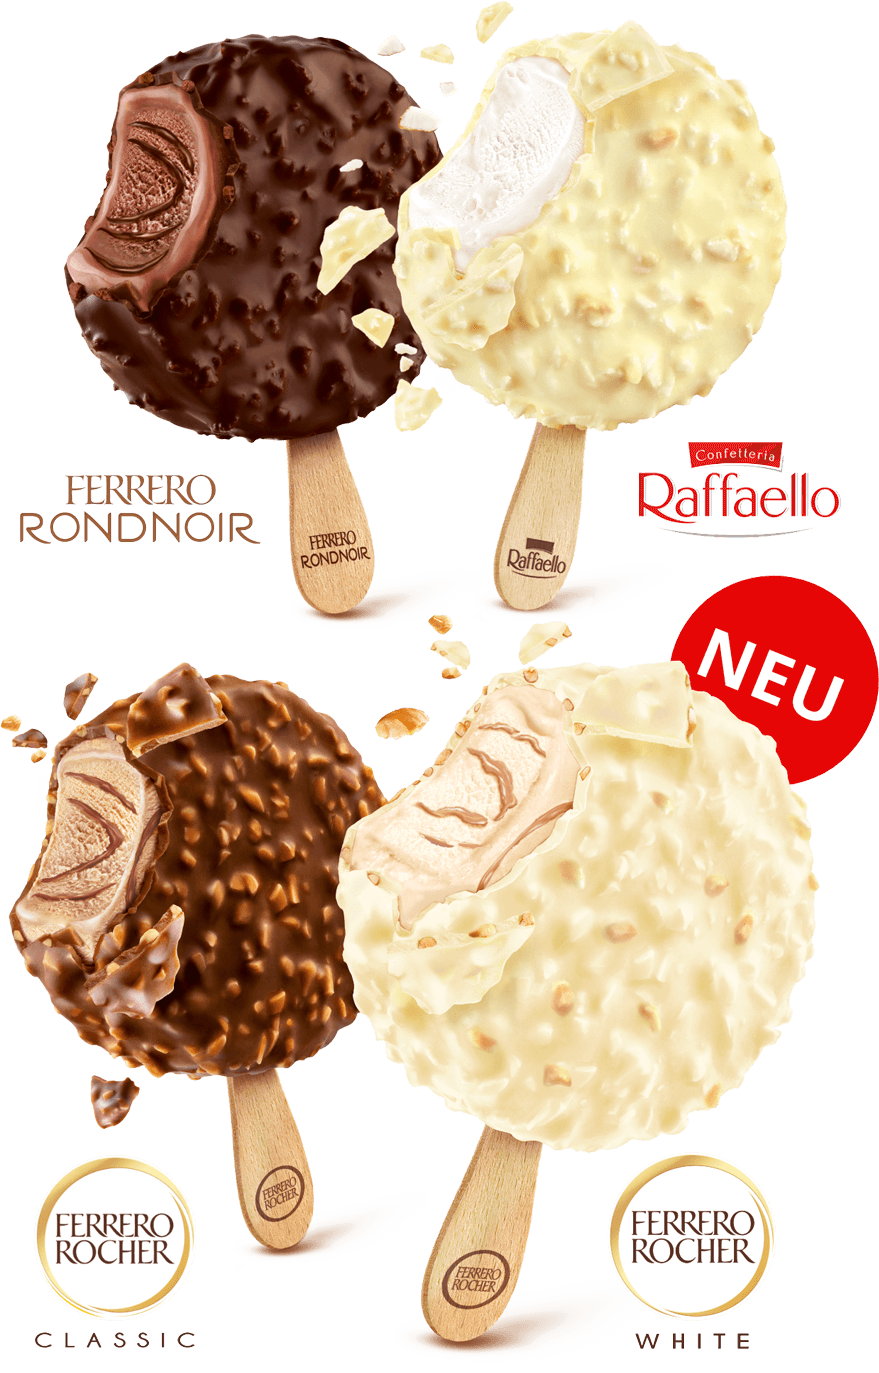 Ferrero Rondnoir Eis, Raffaello Eis, Ferrero Rocher Eis Classic und White